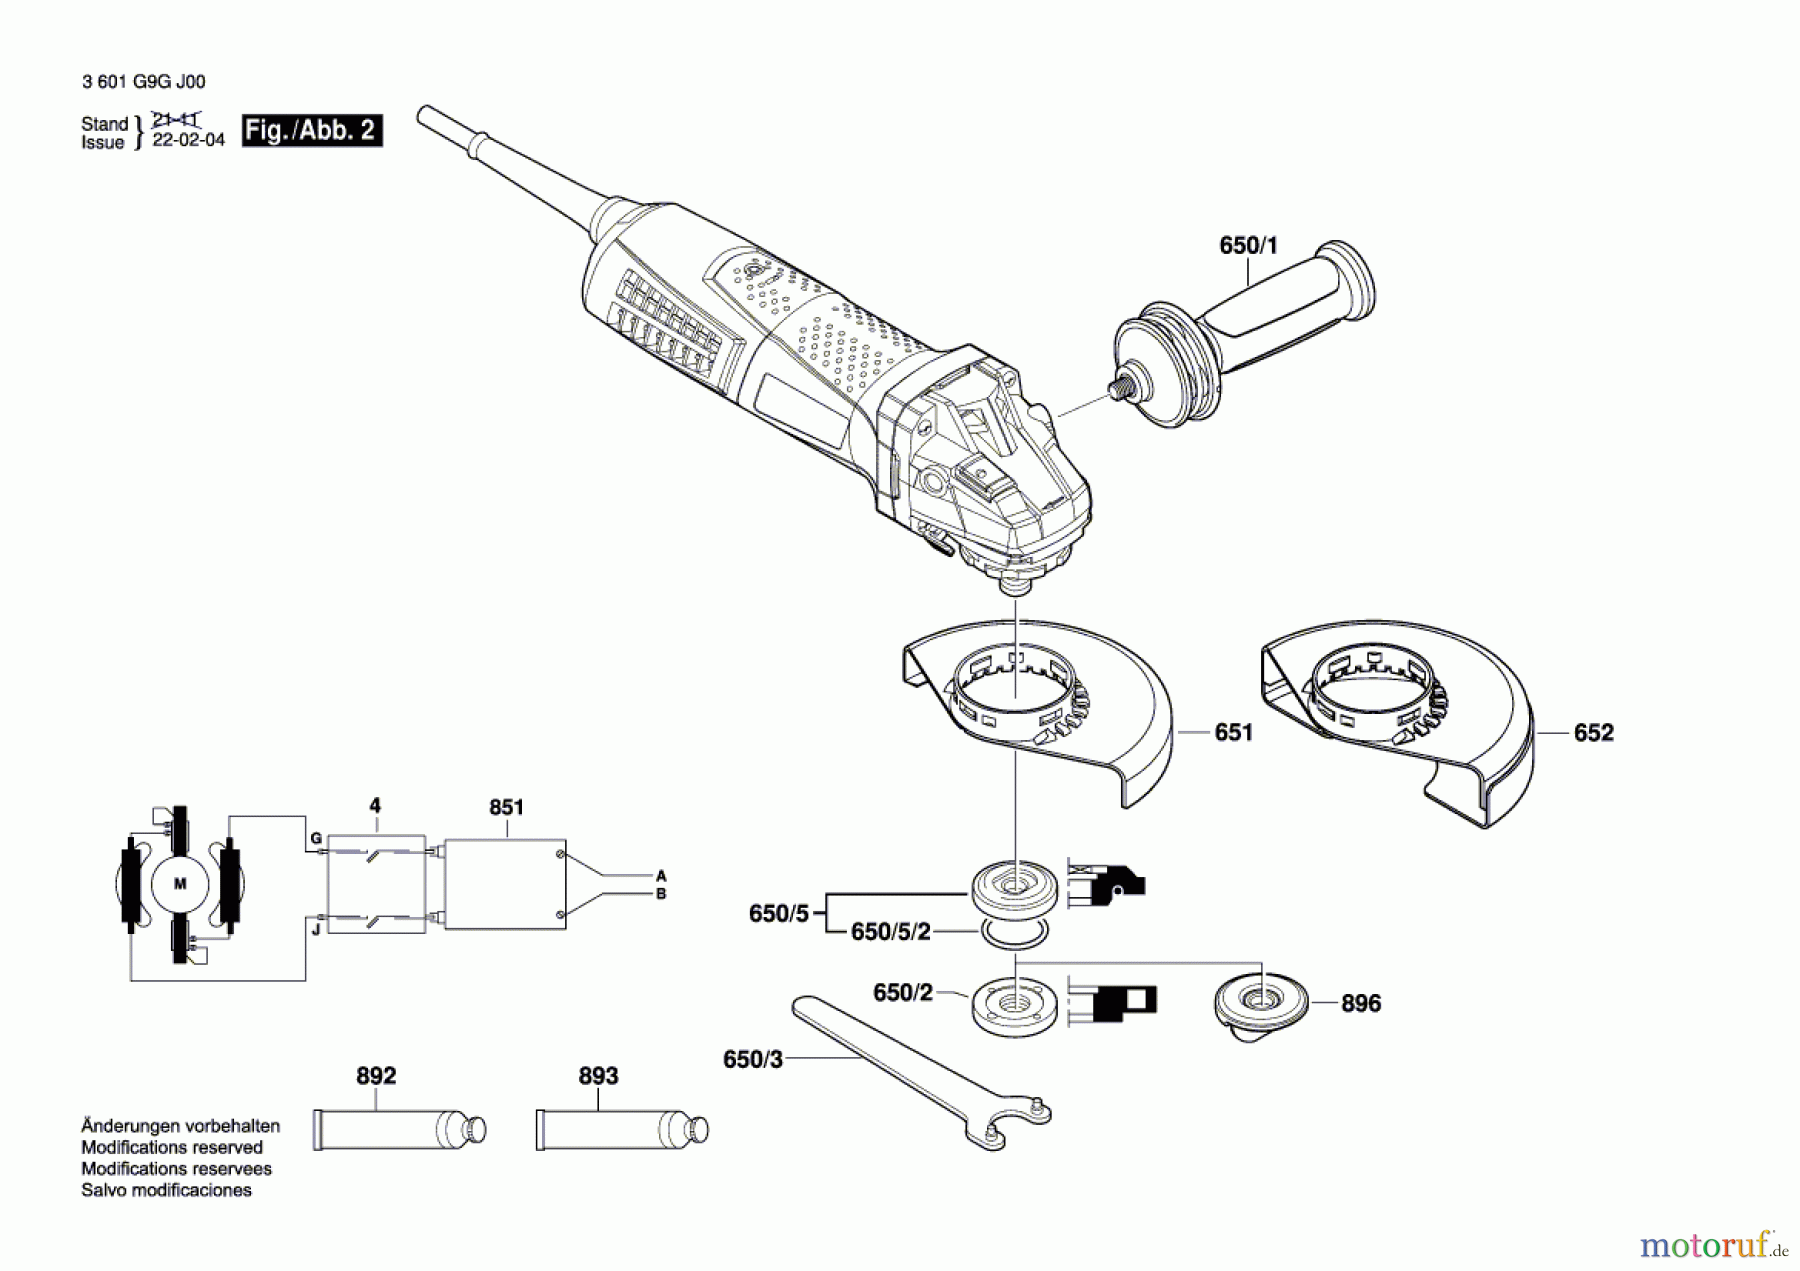  Bosch Werkzeug Winkelschleifer CG 17-150 Seite 2